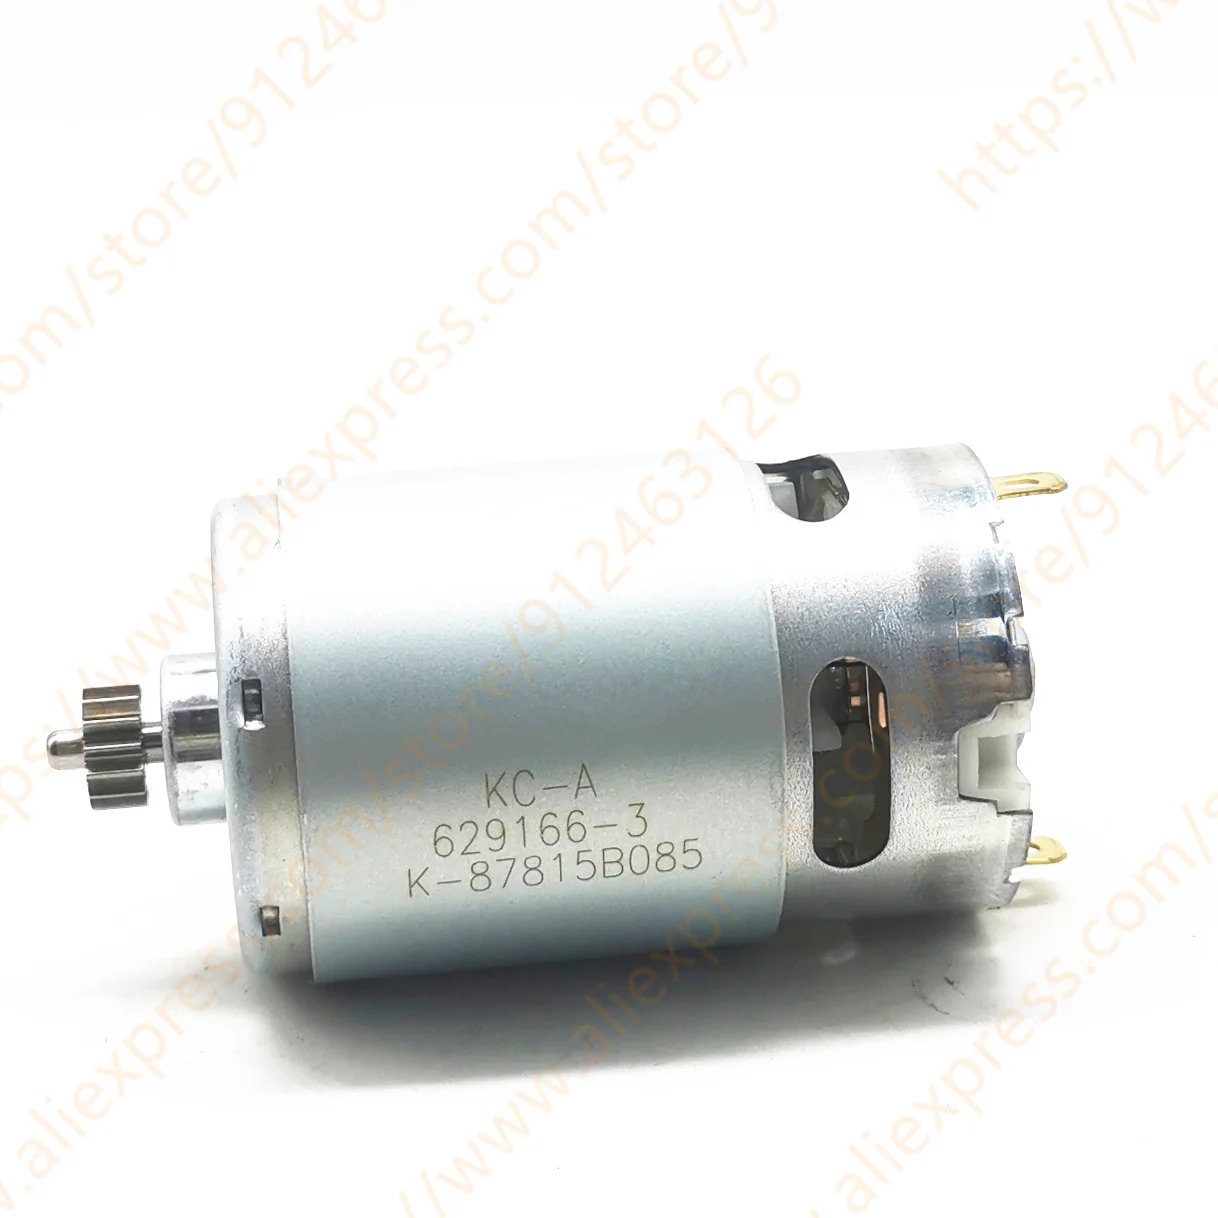 Motor for MAKITA HP333DSME HP333D DF333D DF033D DF333 629395-8 629166-3